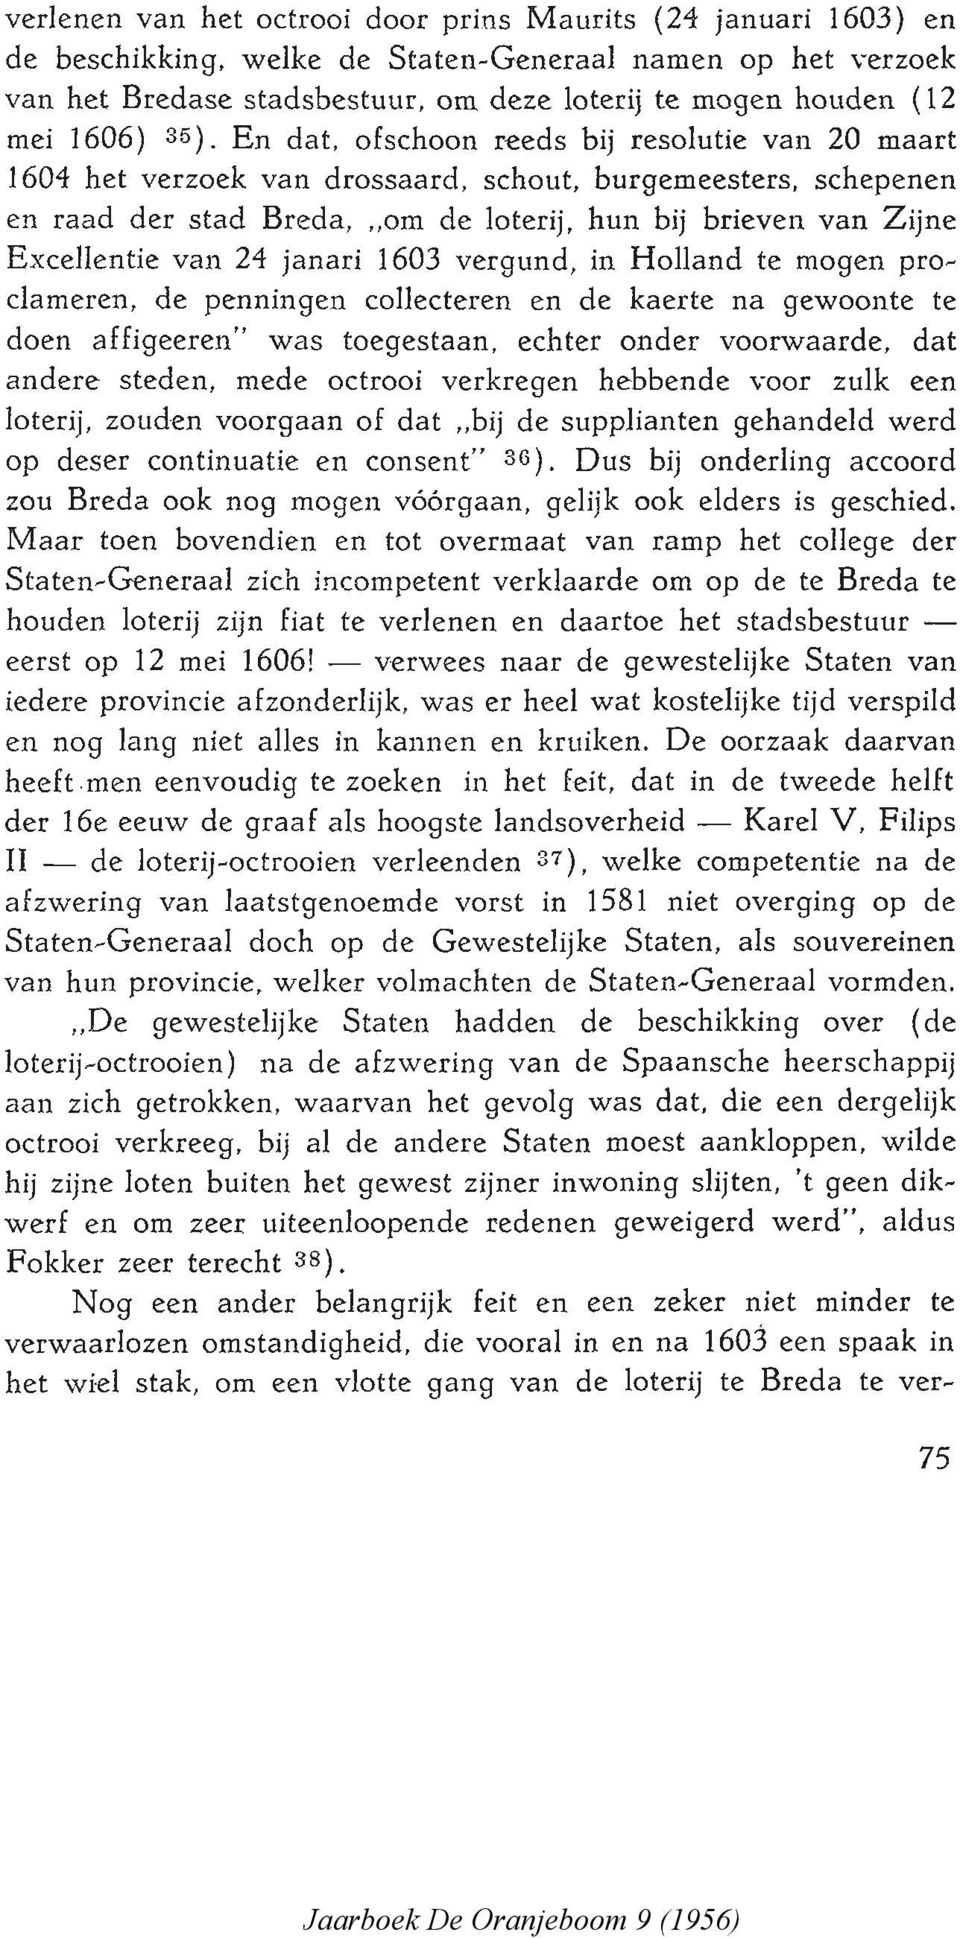 En dat, ofschoon reeds bij resolutie van 20 maart 1604 het verzoek van drossaard, schout, burgemeesters, schepenen en raad der stad Breda, "om de loterij, hun bij brieven van Zijne Excellentie van 24